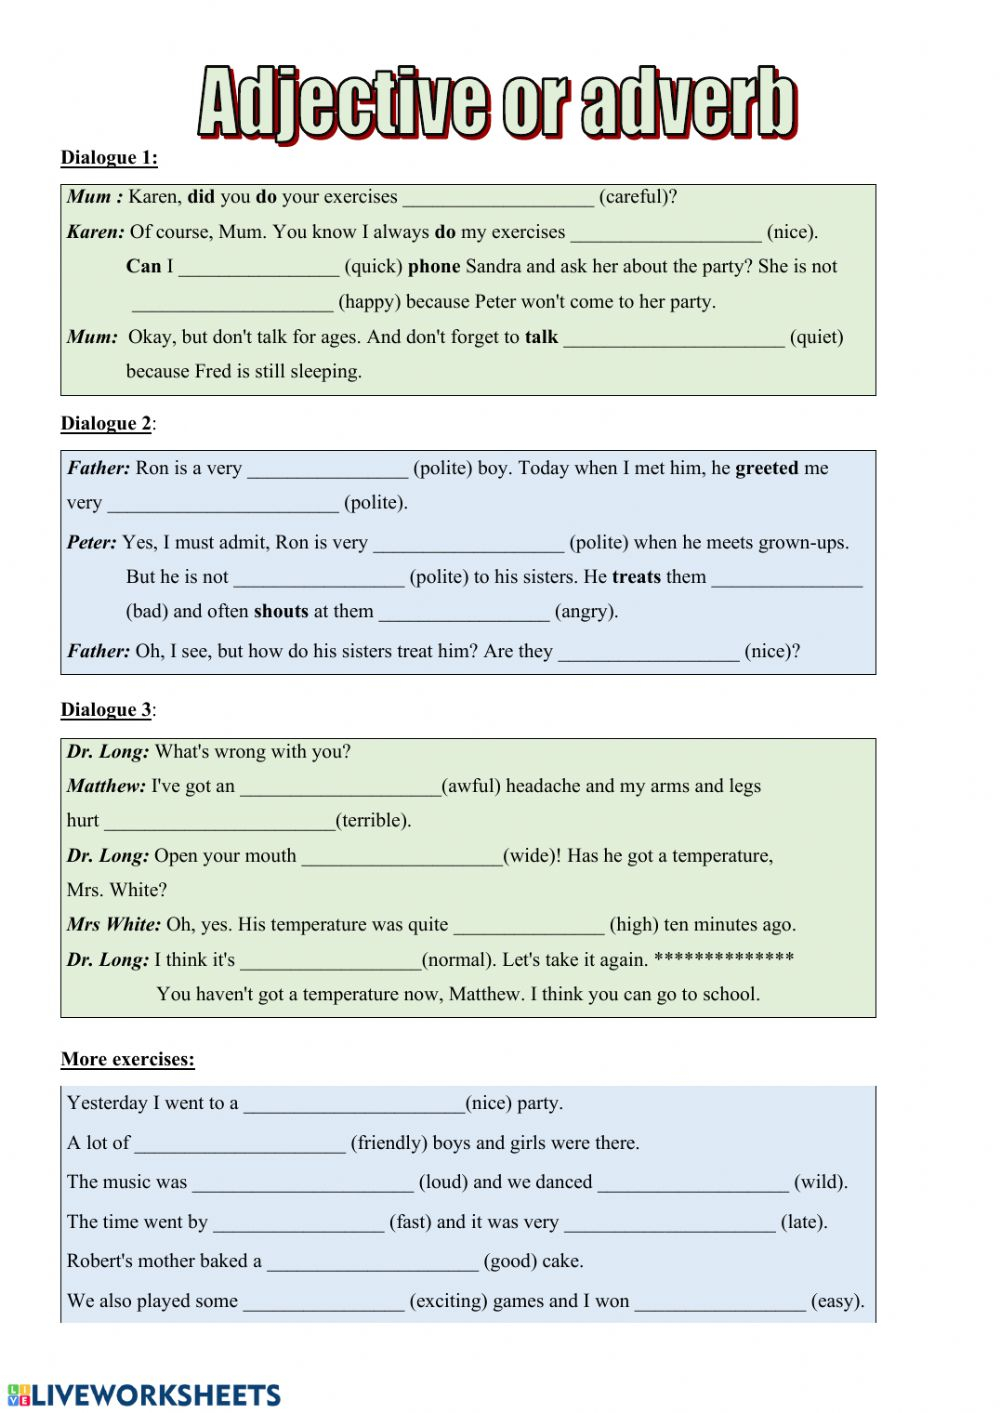 Adjective Adverb Worksheet Grade 5 AdverbWorksheets